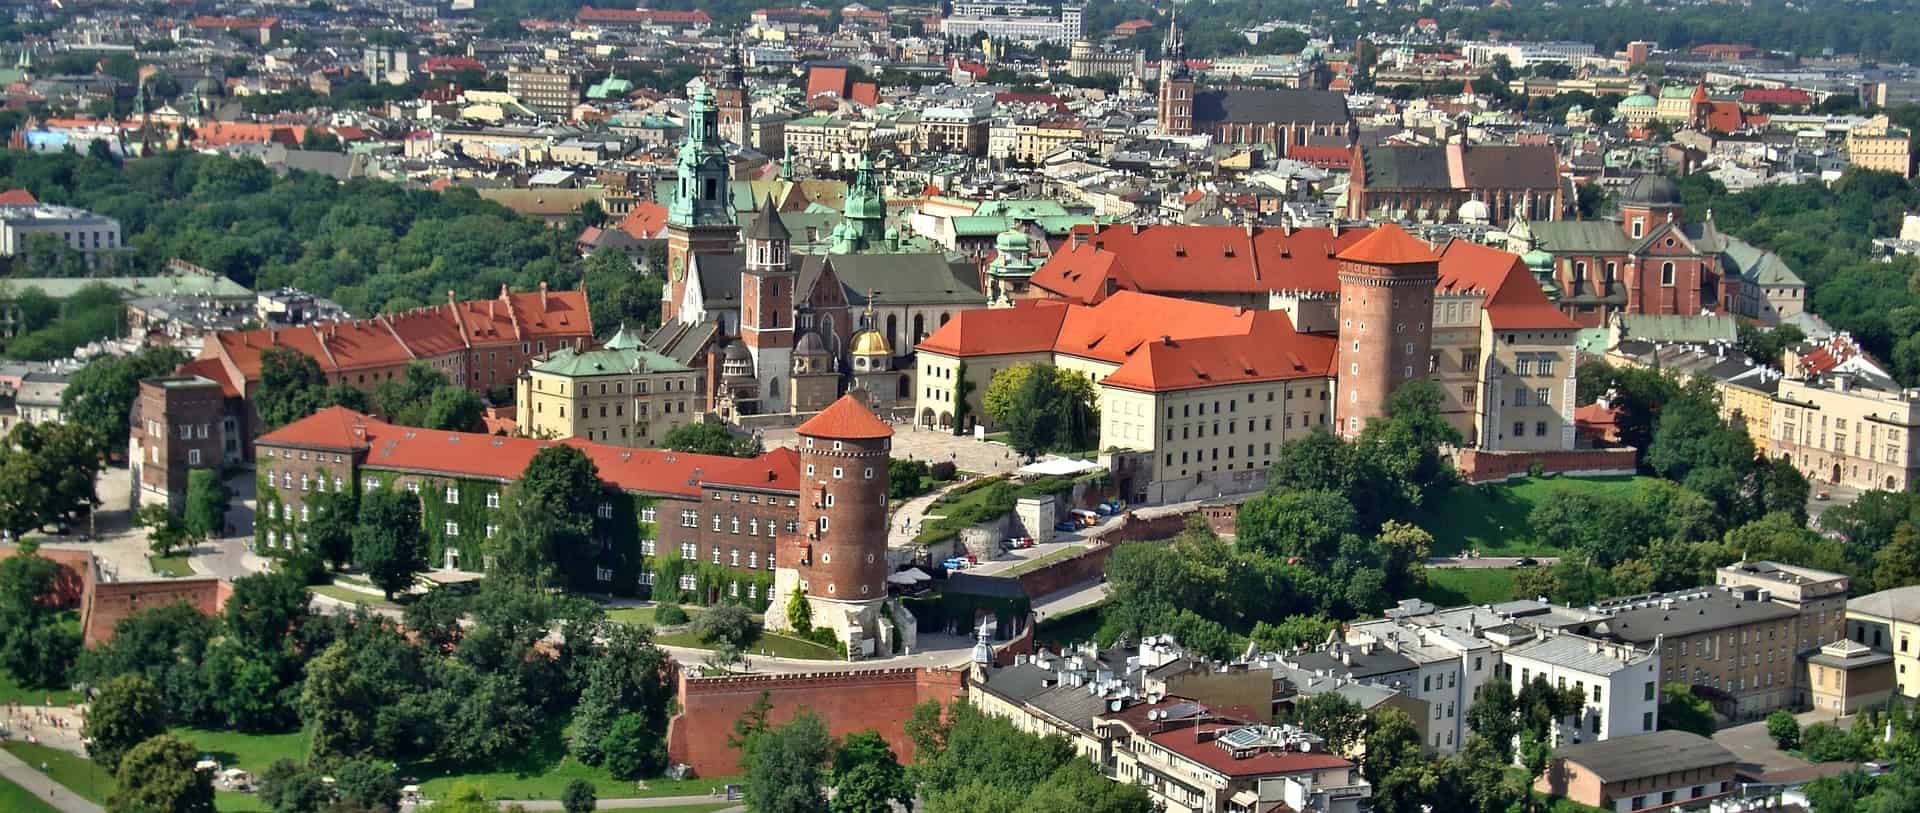 Gejowskie hotele w Krakowie